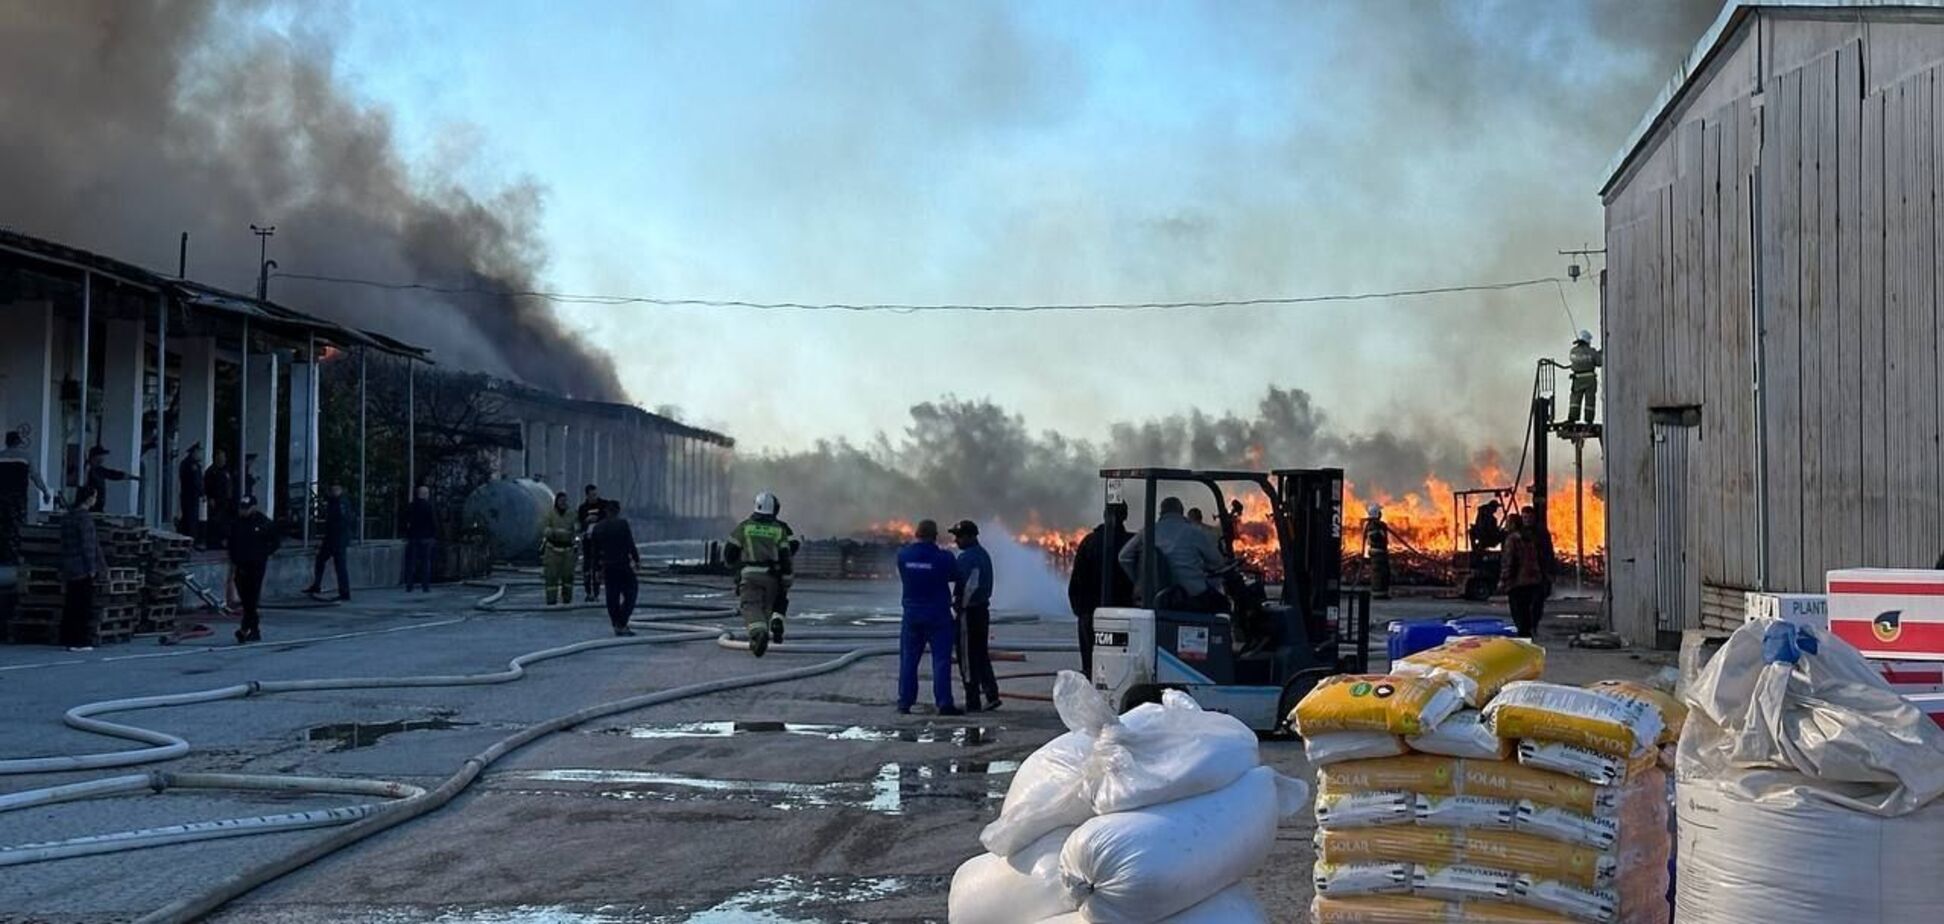 В оккупированном Крыму вспыхнул склад: площадь пожара составила 1 800 кв метров. Видео